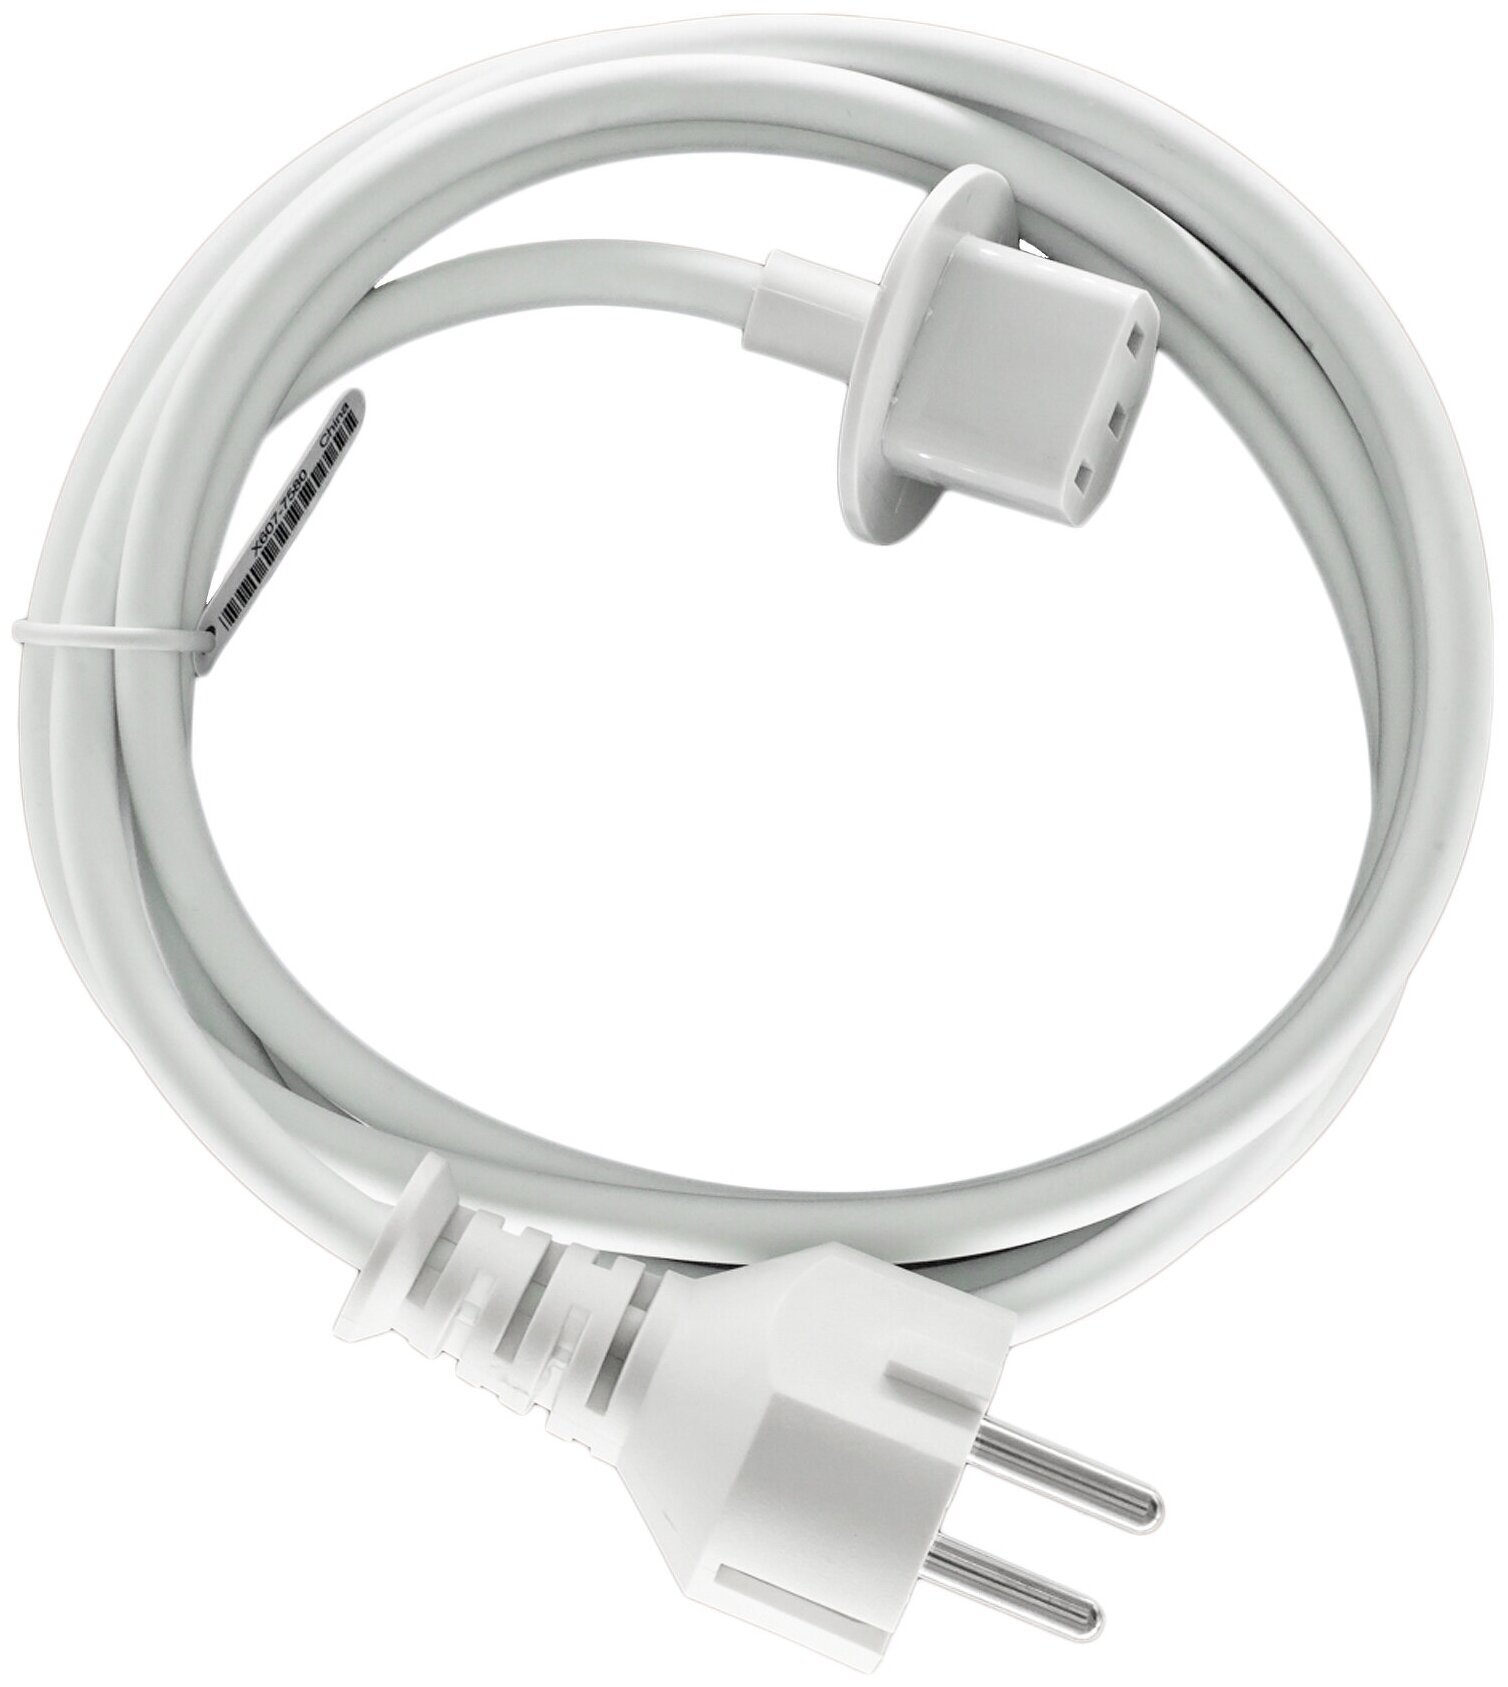 Сетевой кабель питания для iMac